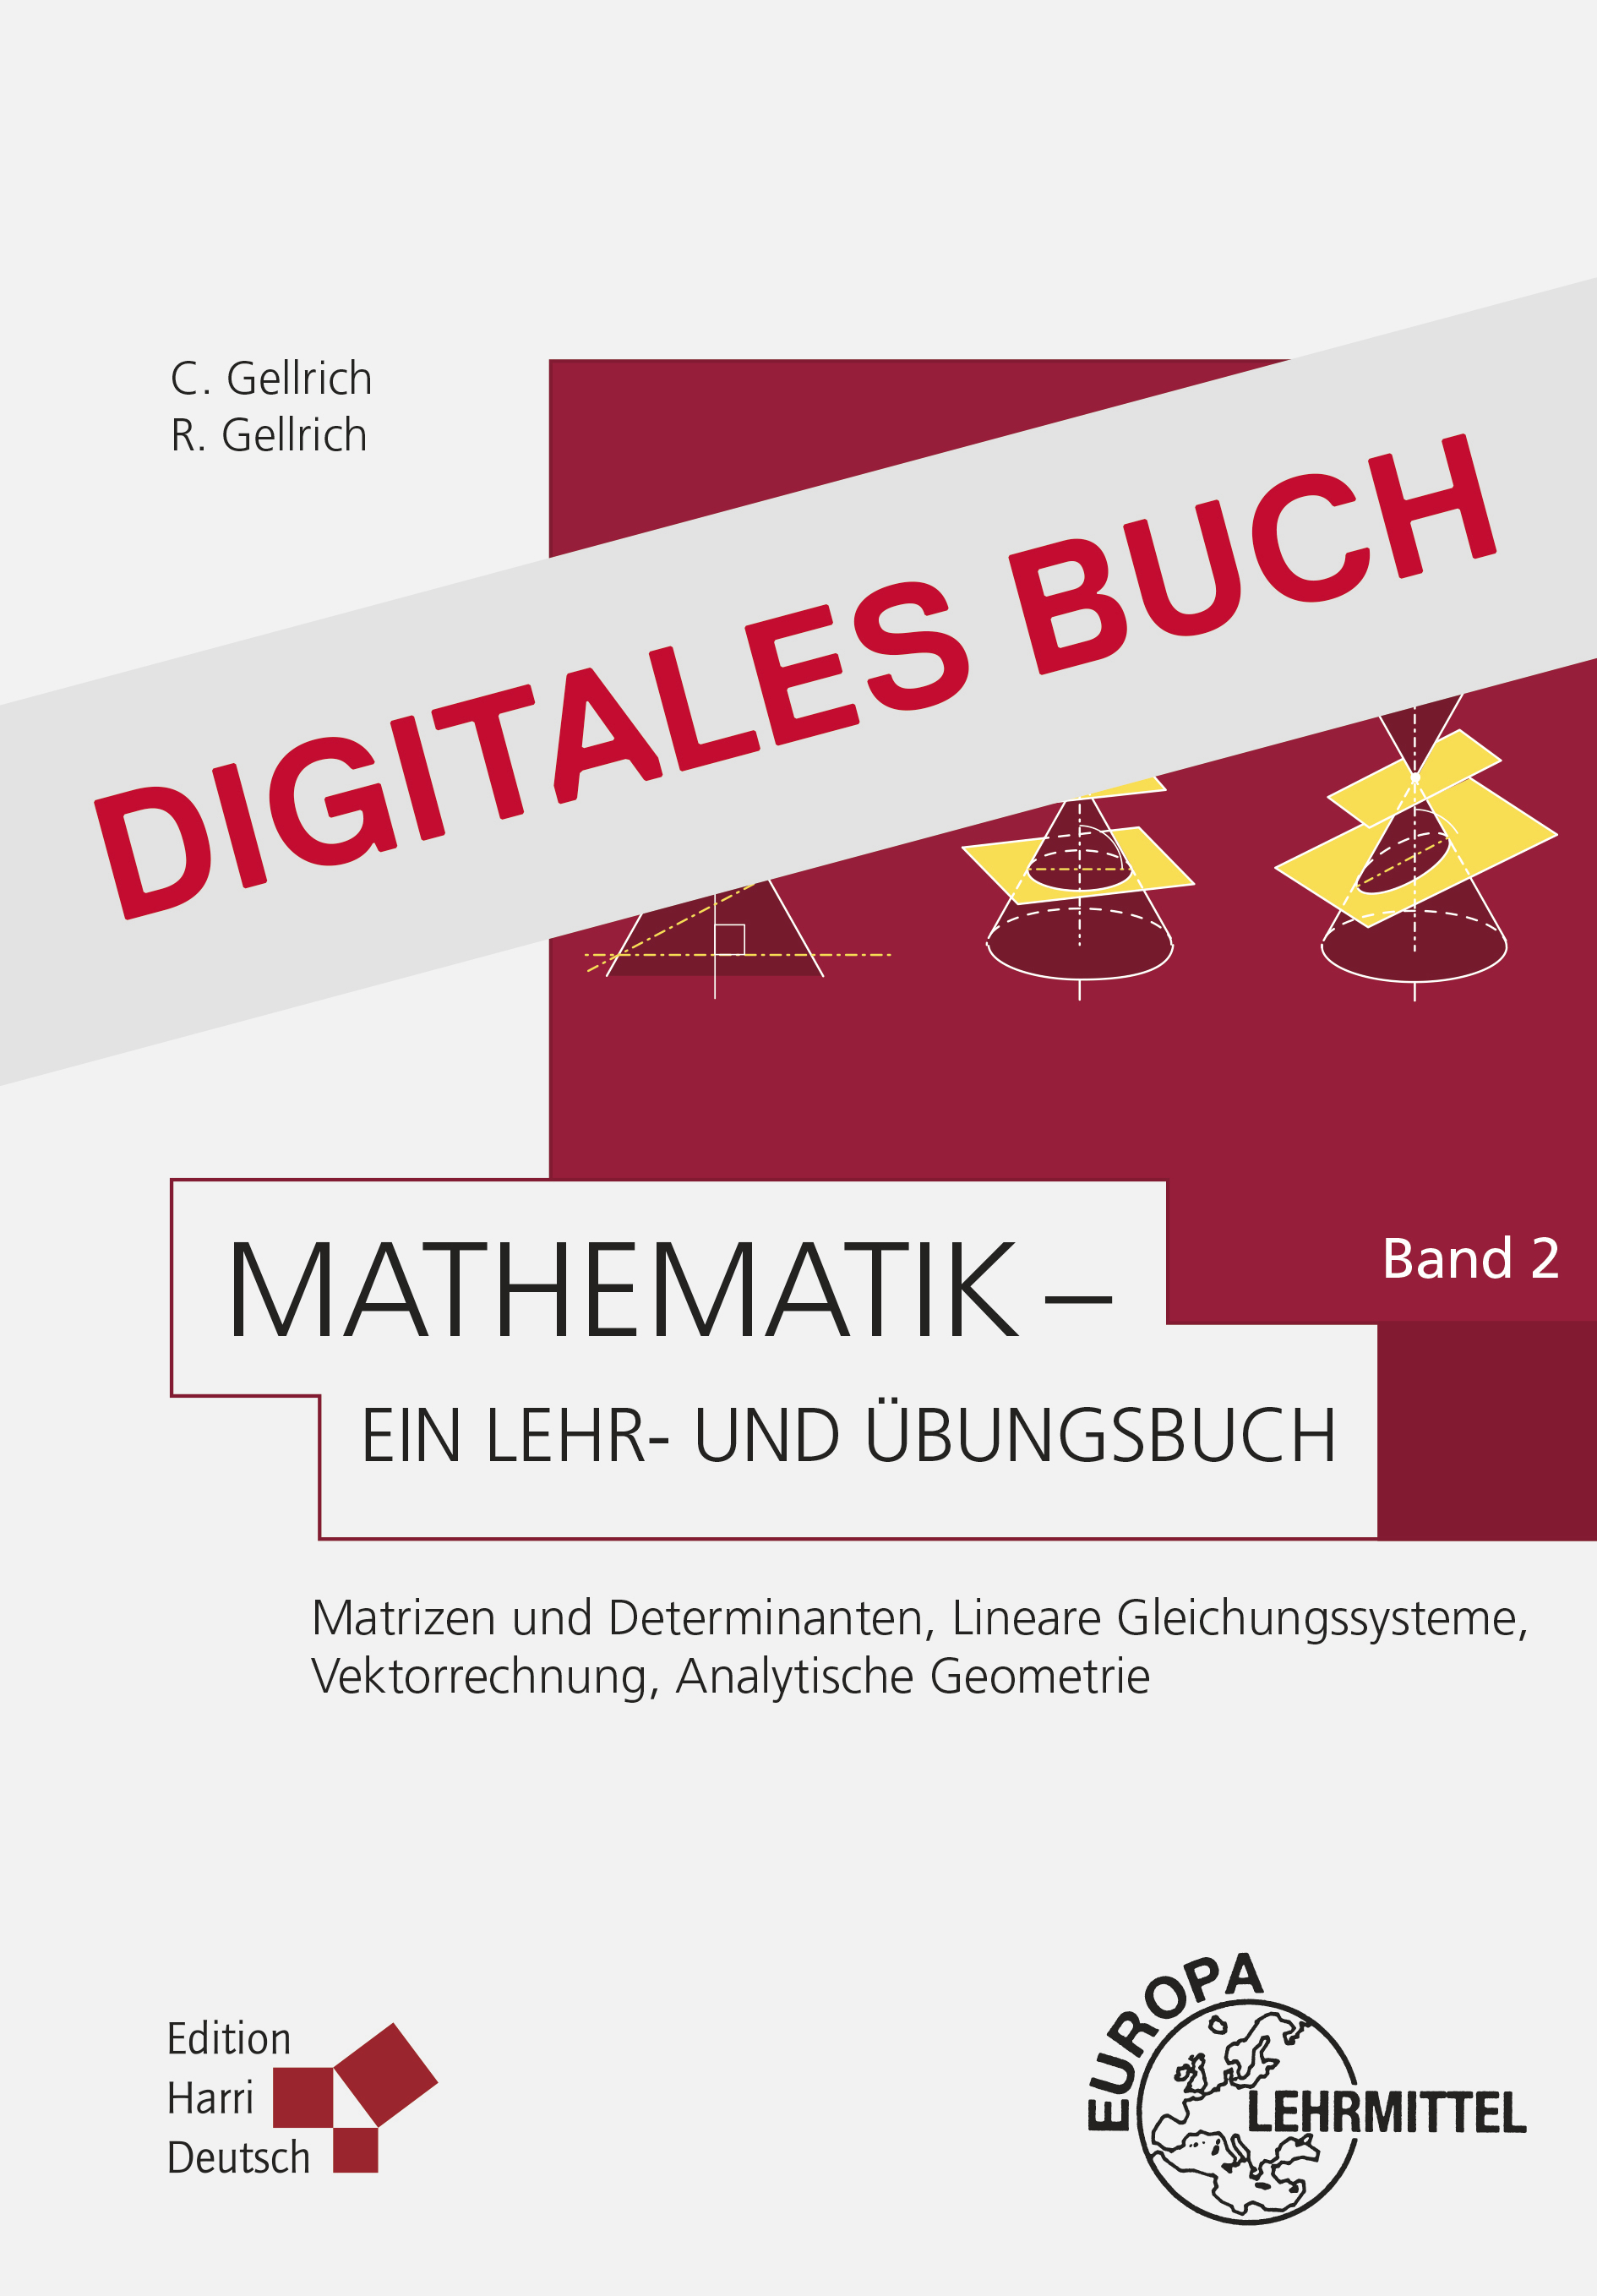 Mathematik - Ein Lehr- und Übungsbuch: Band 2 - Digitales Buch